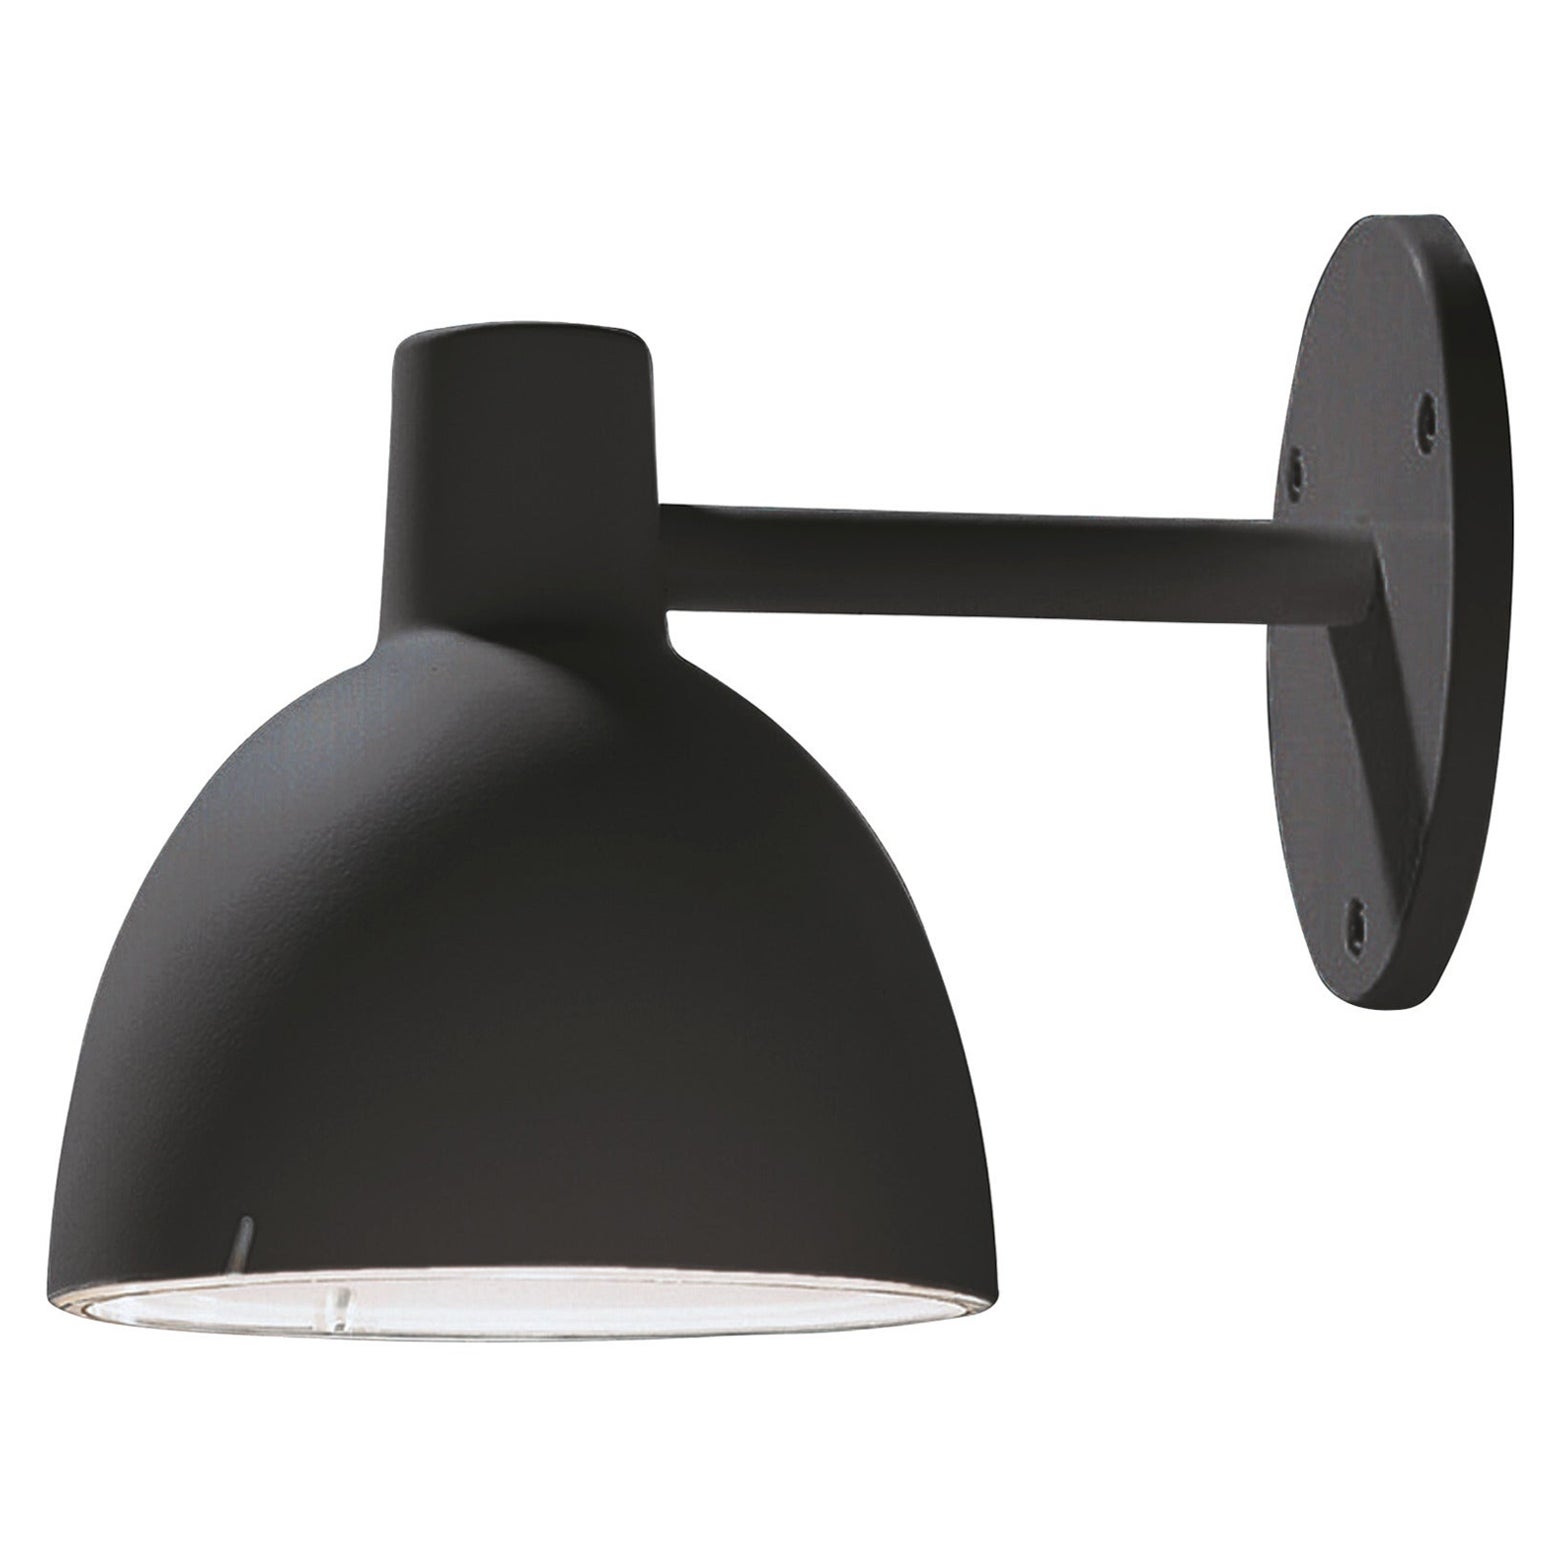 Toldbod Outdoor Wall Lamp in Black by Louis Poulsen